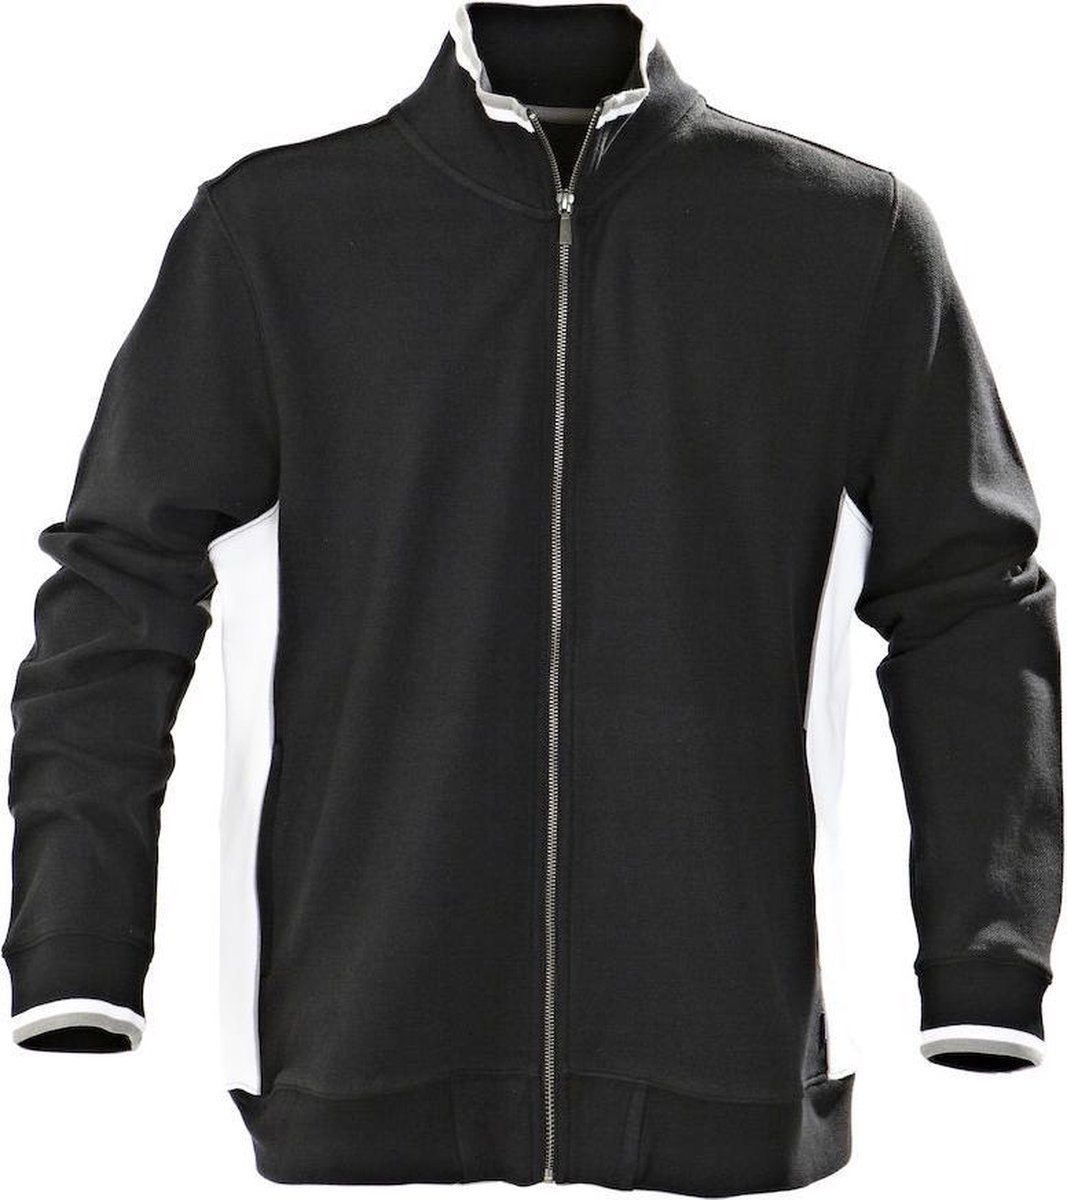 Harvest Atlanta Piqué Jacket Vest Zwart 2132018 - Maat S